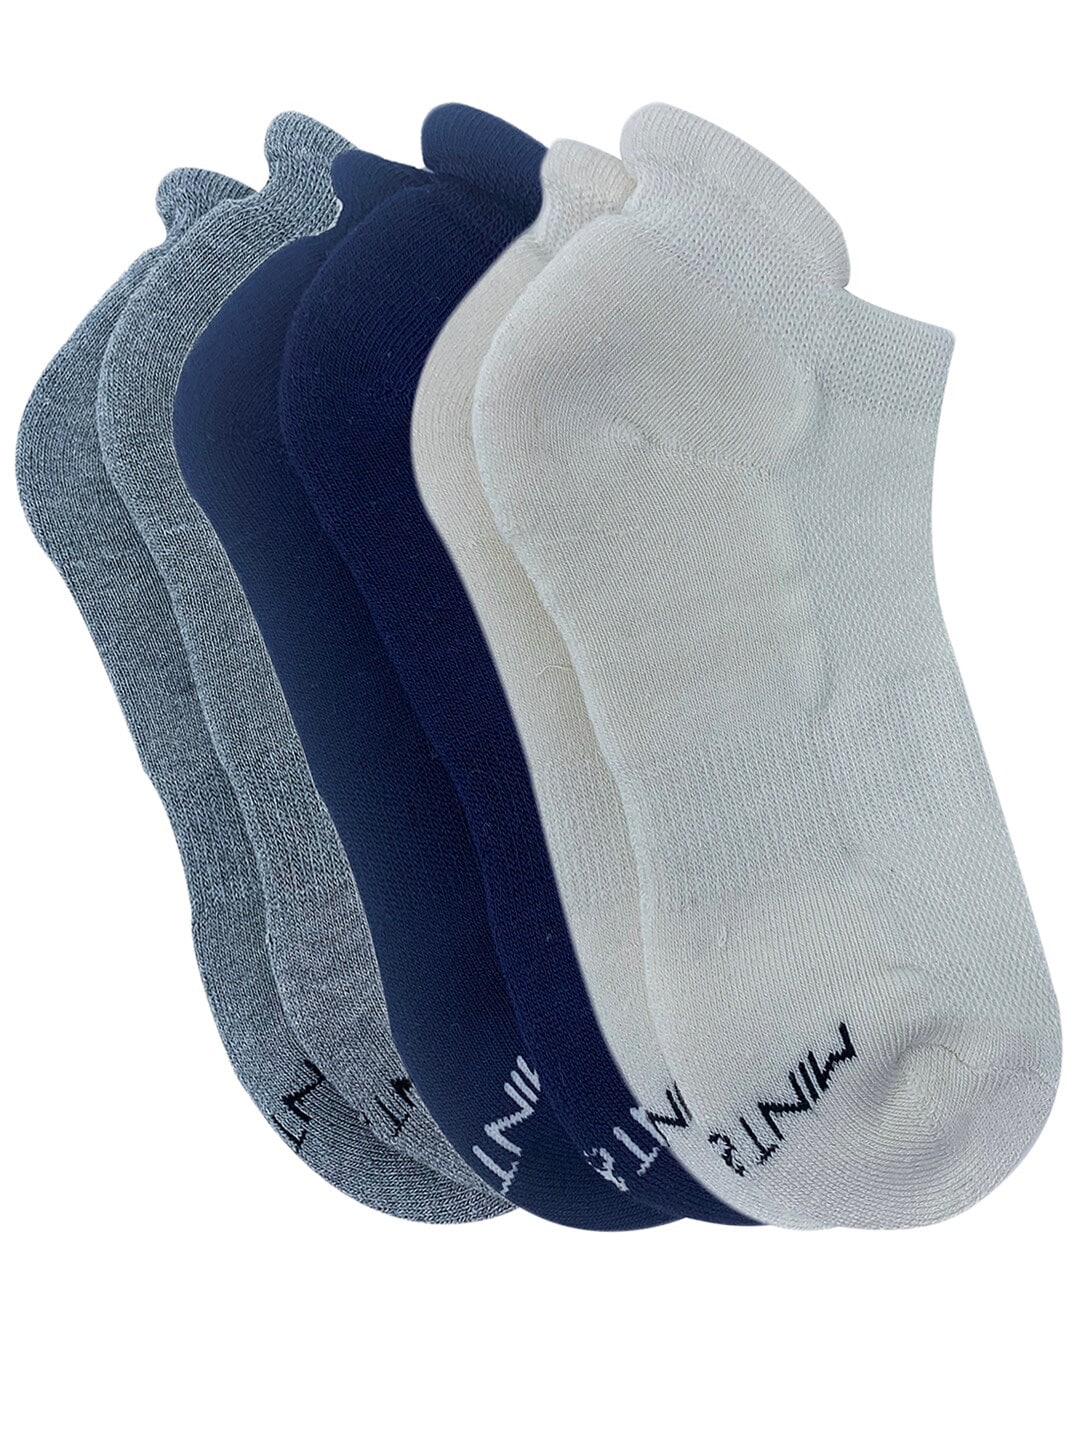 Mint & Oak Women Solid Set of 3 Socks Price in India